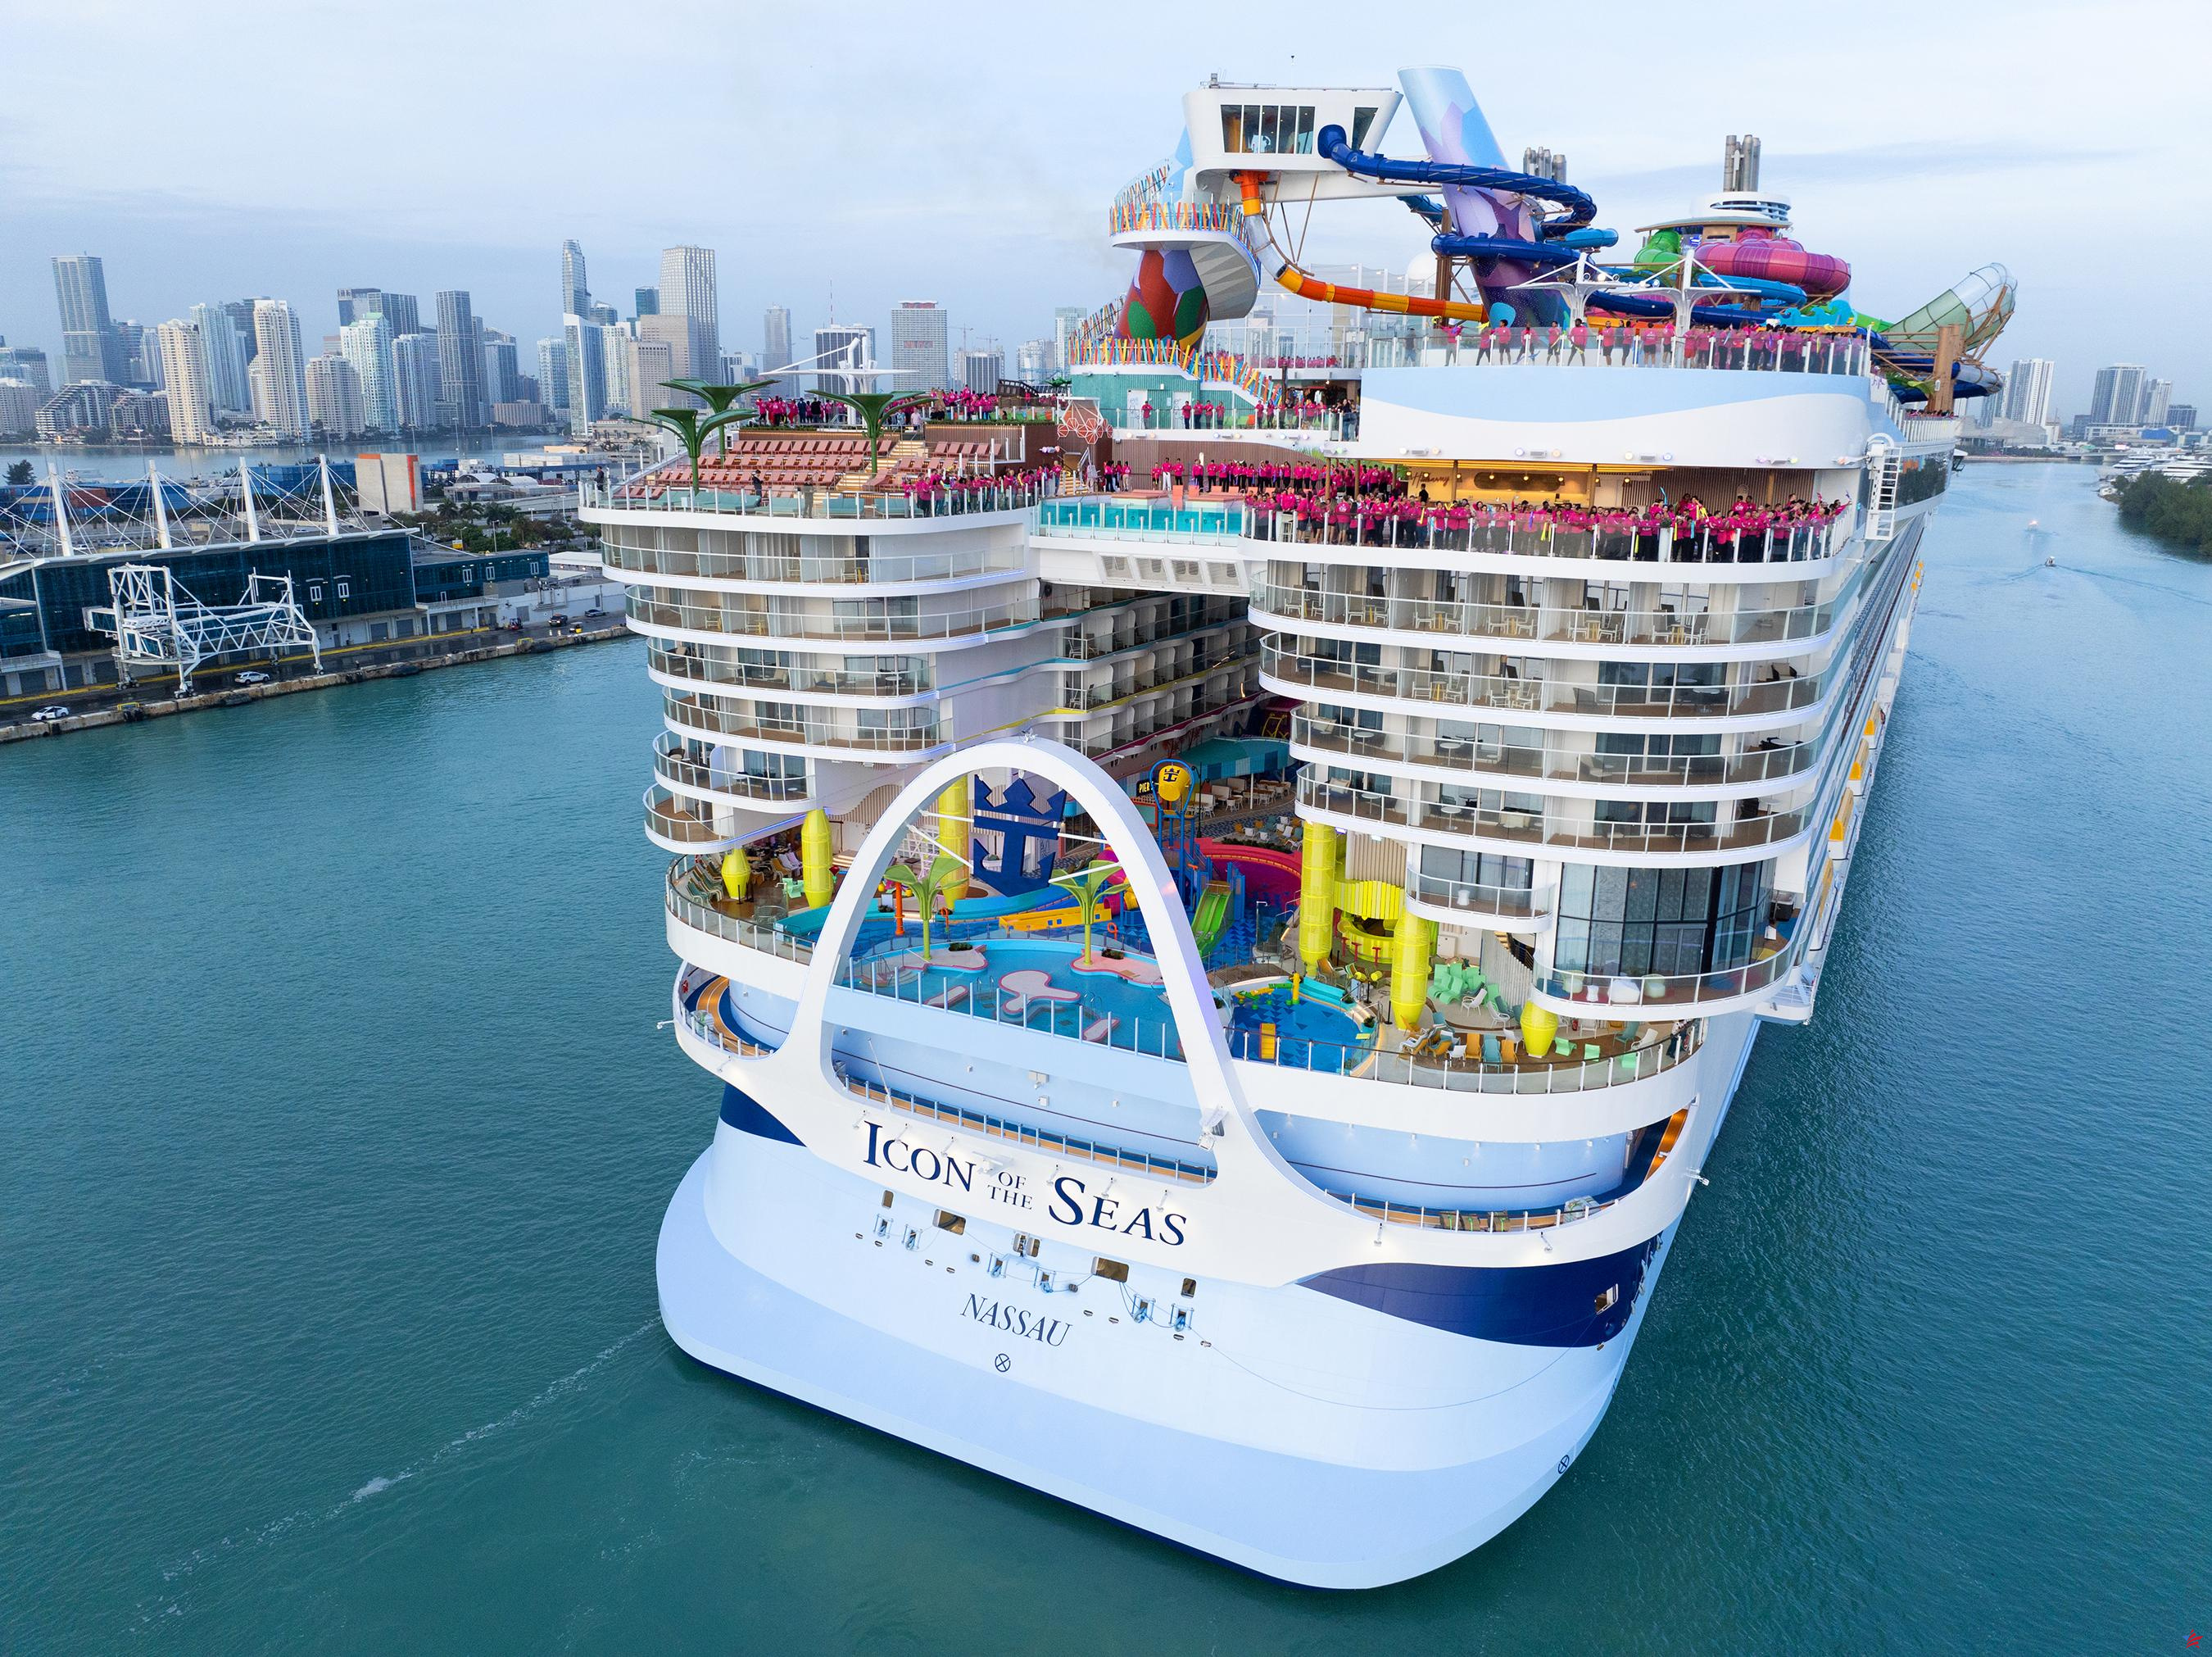 Abordamos el Icon of the Seas, el nuevo transatlántico más grande del mundo de Royal Caribbean